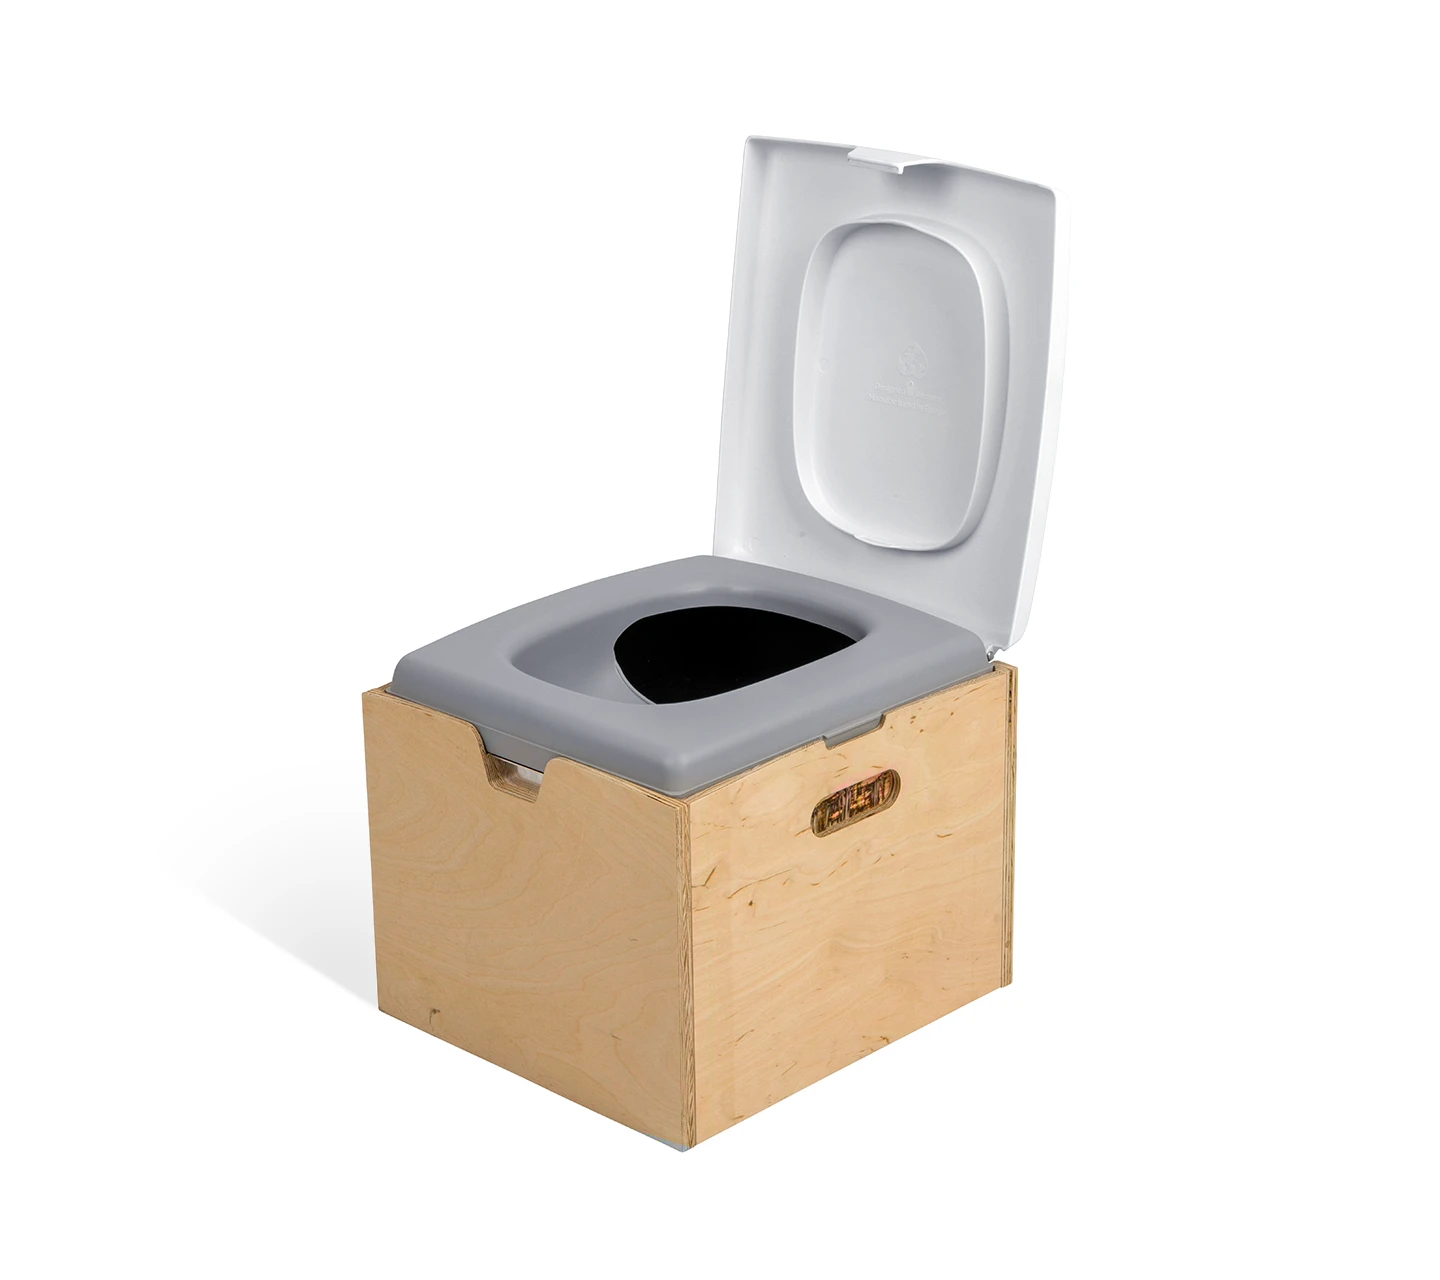 Toilette sèche de camping : toilettes sèches portables